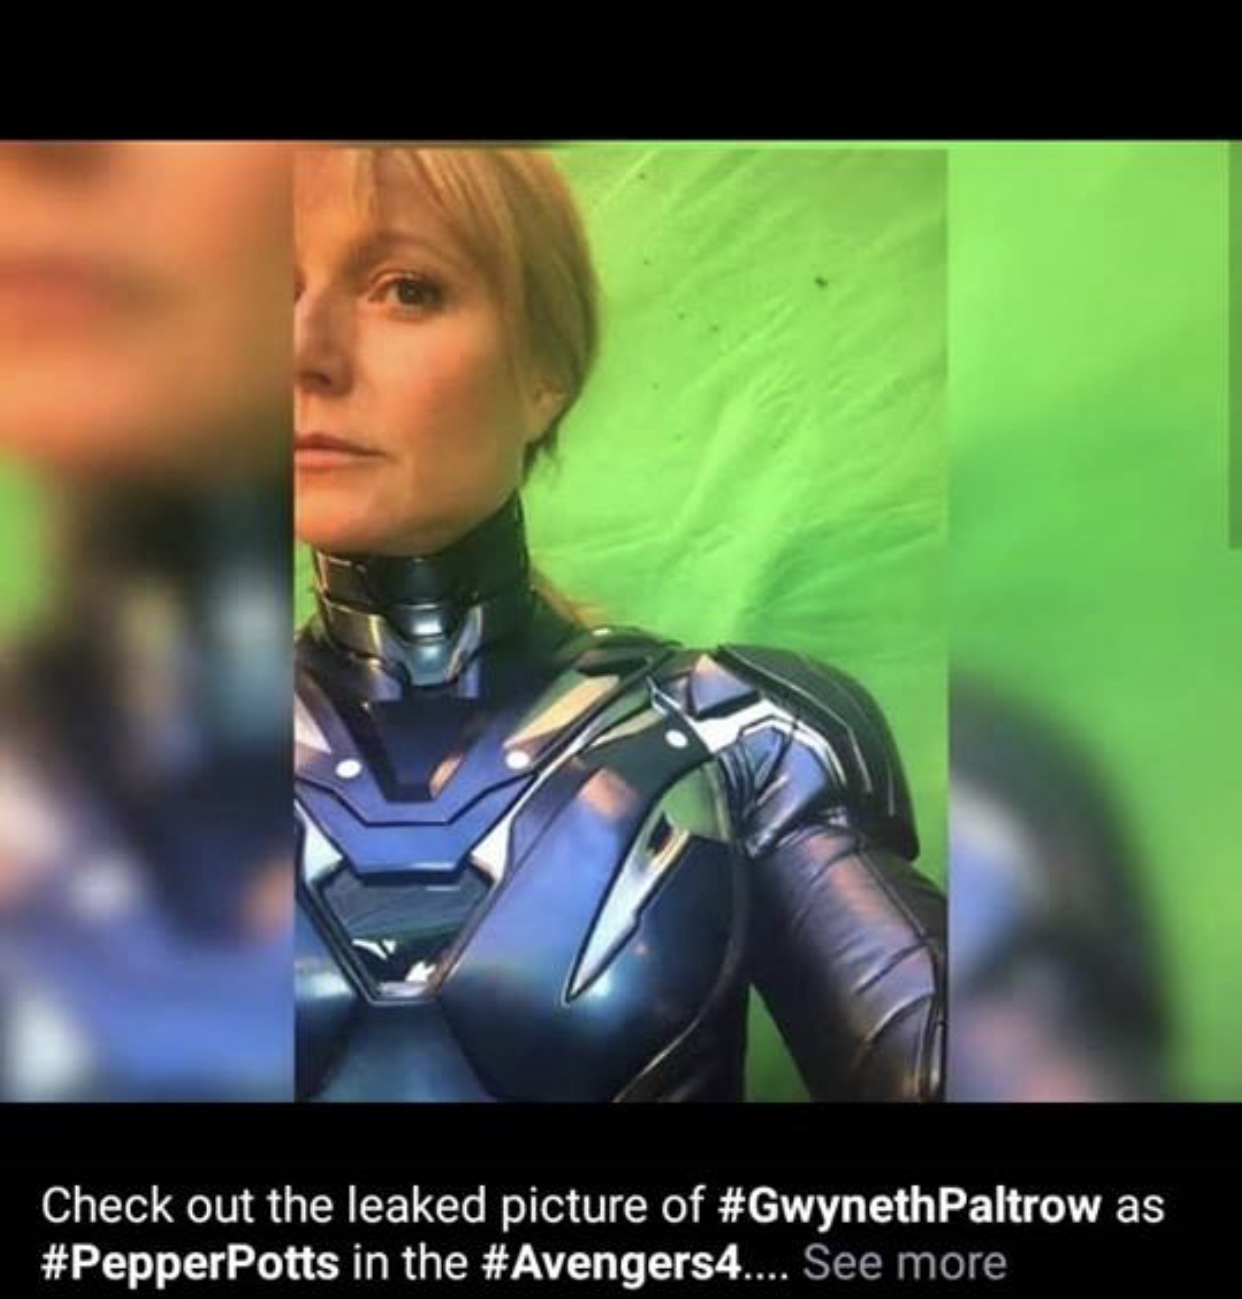 Gwyneth paltrow leak